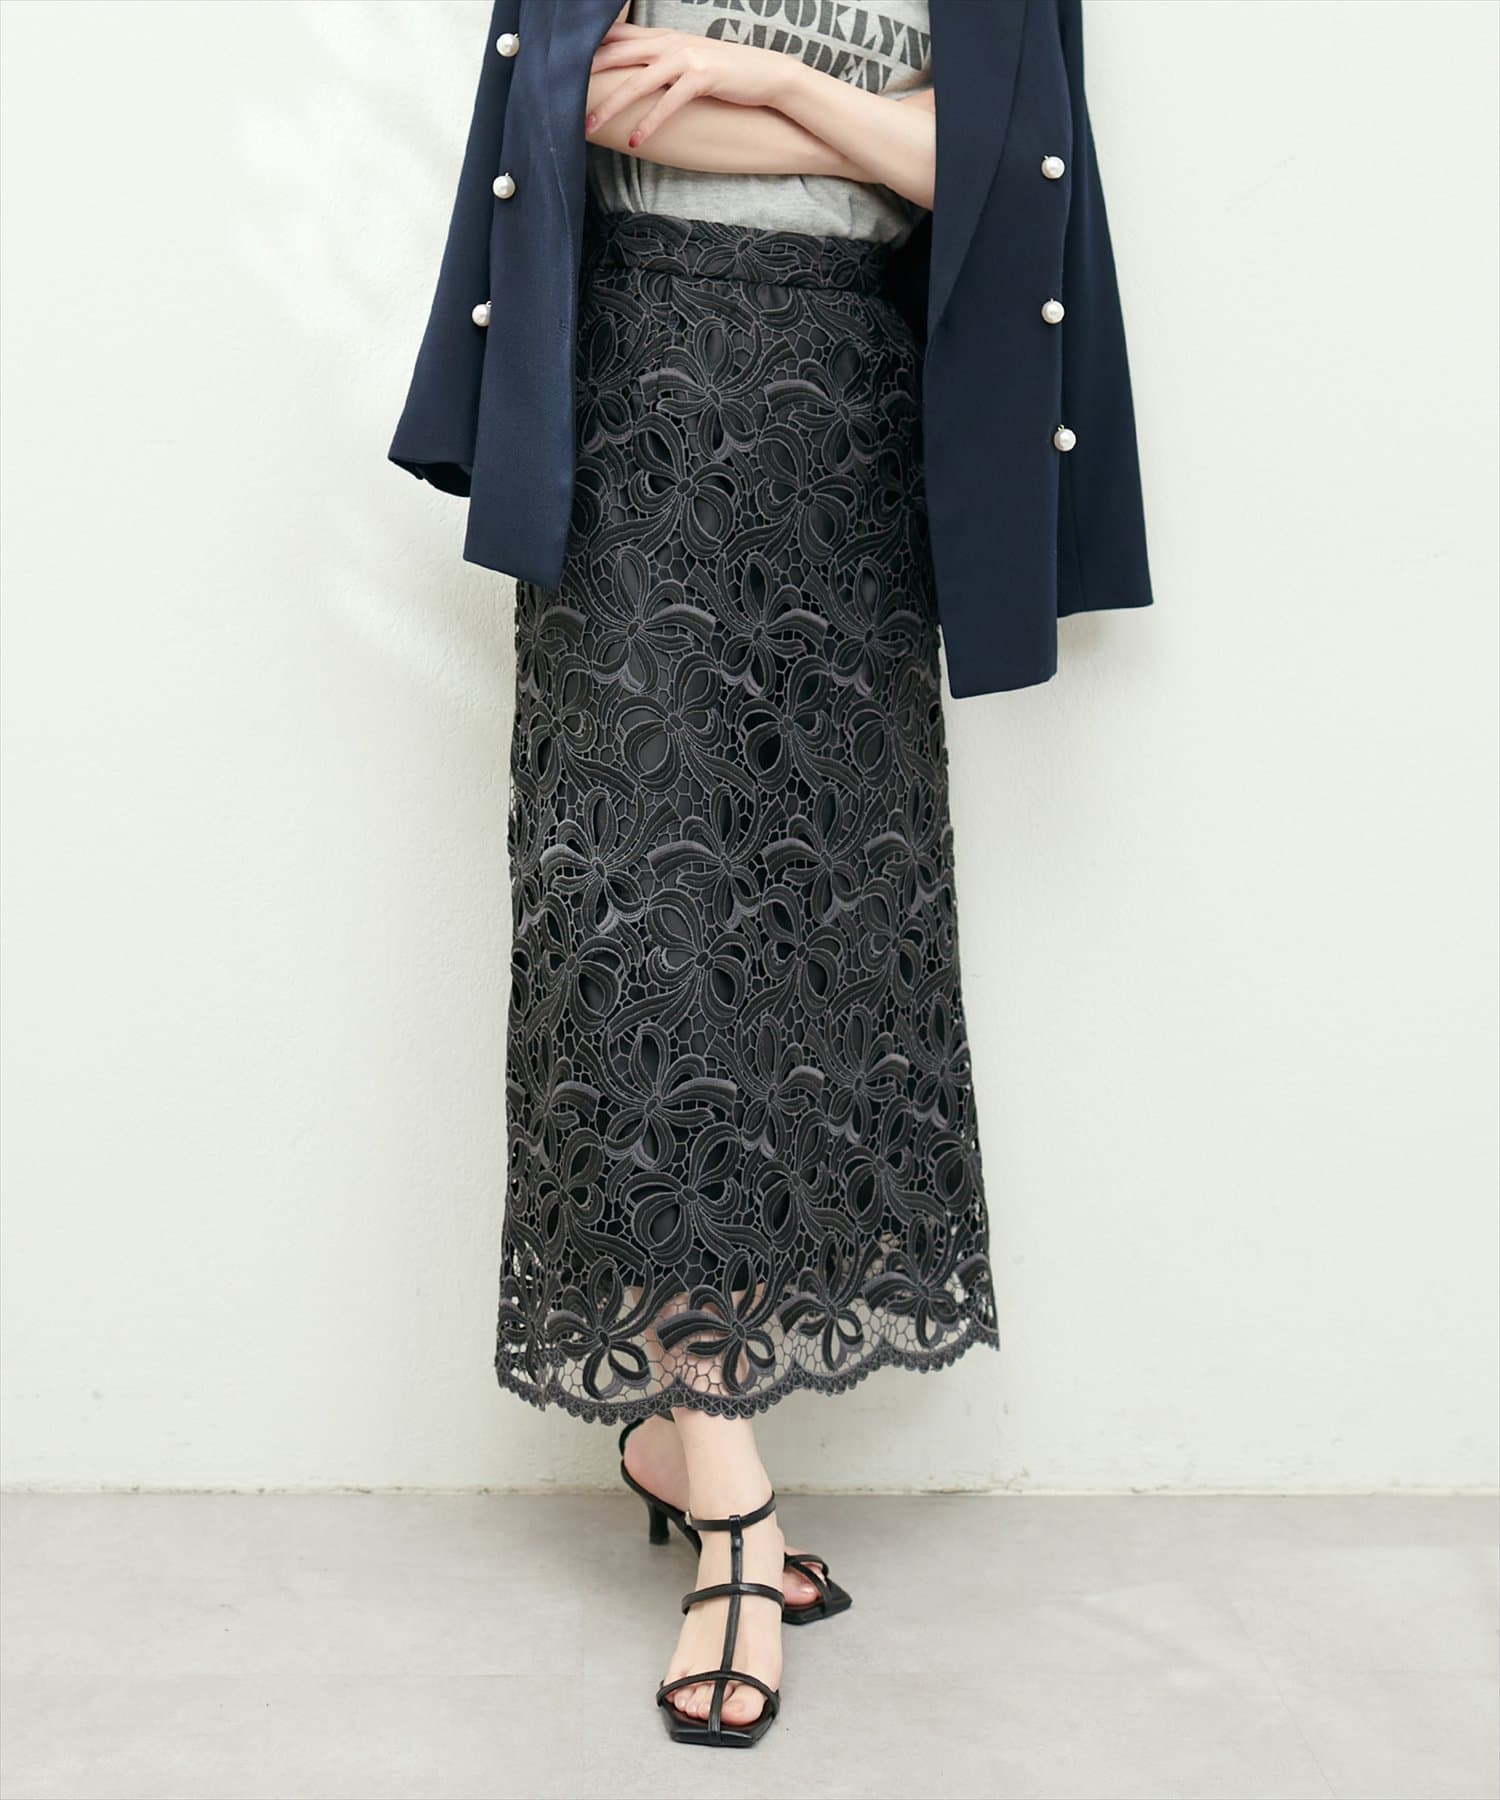 natural couture(ナチュラルクチュール) 23SS/リボンモチーフケミカルレーススカート